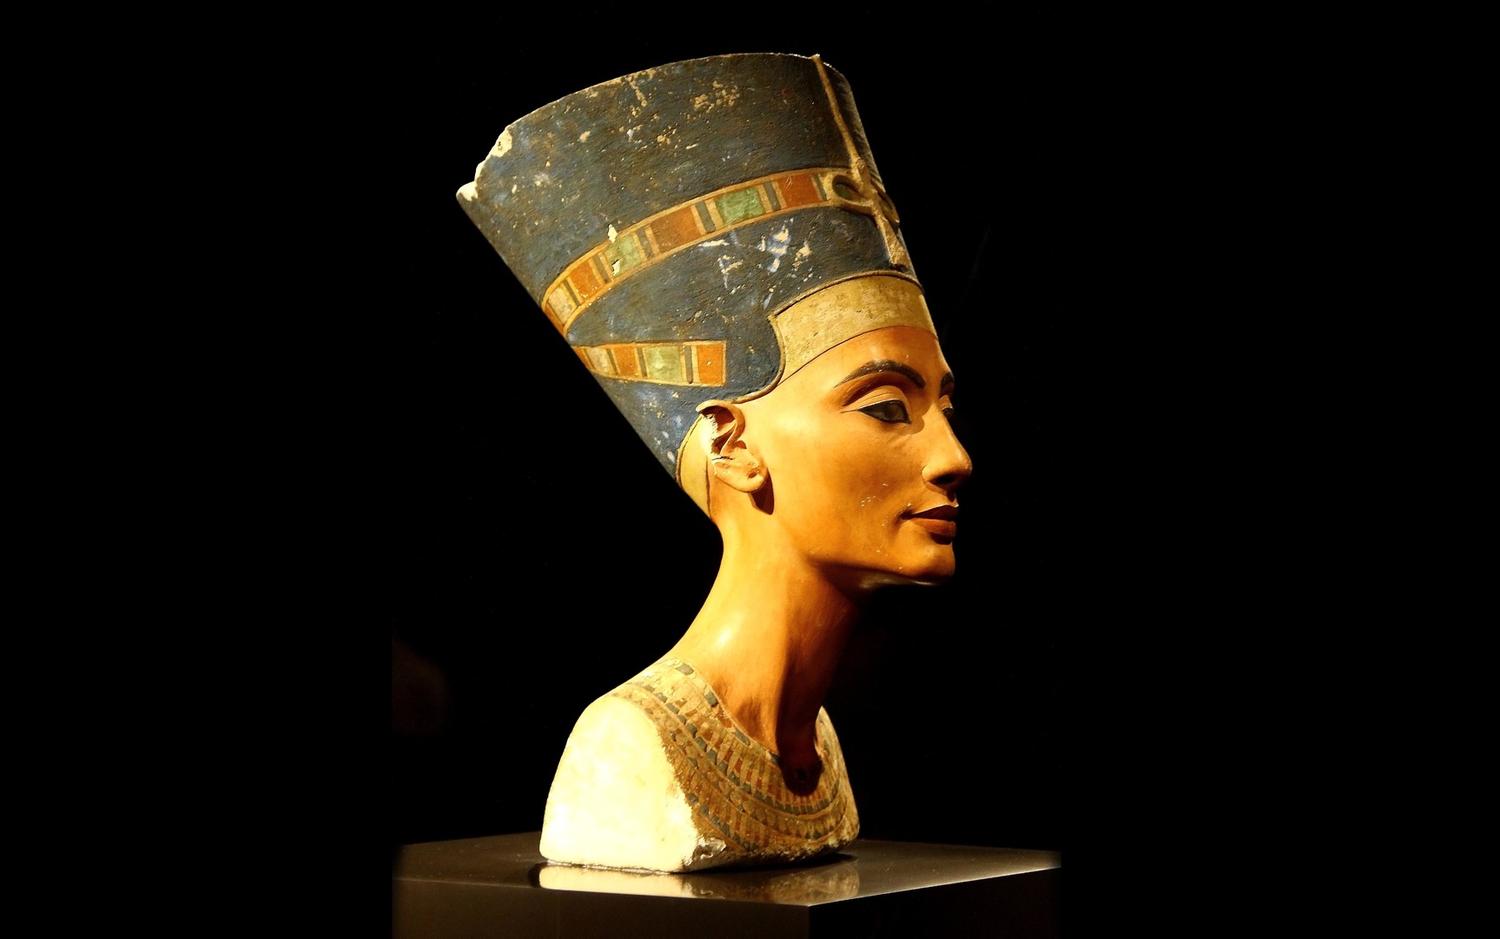 Реферат: Бюст Нефертити